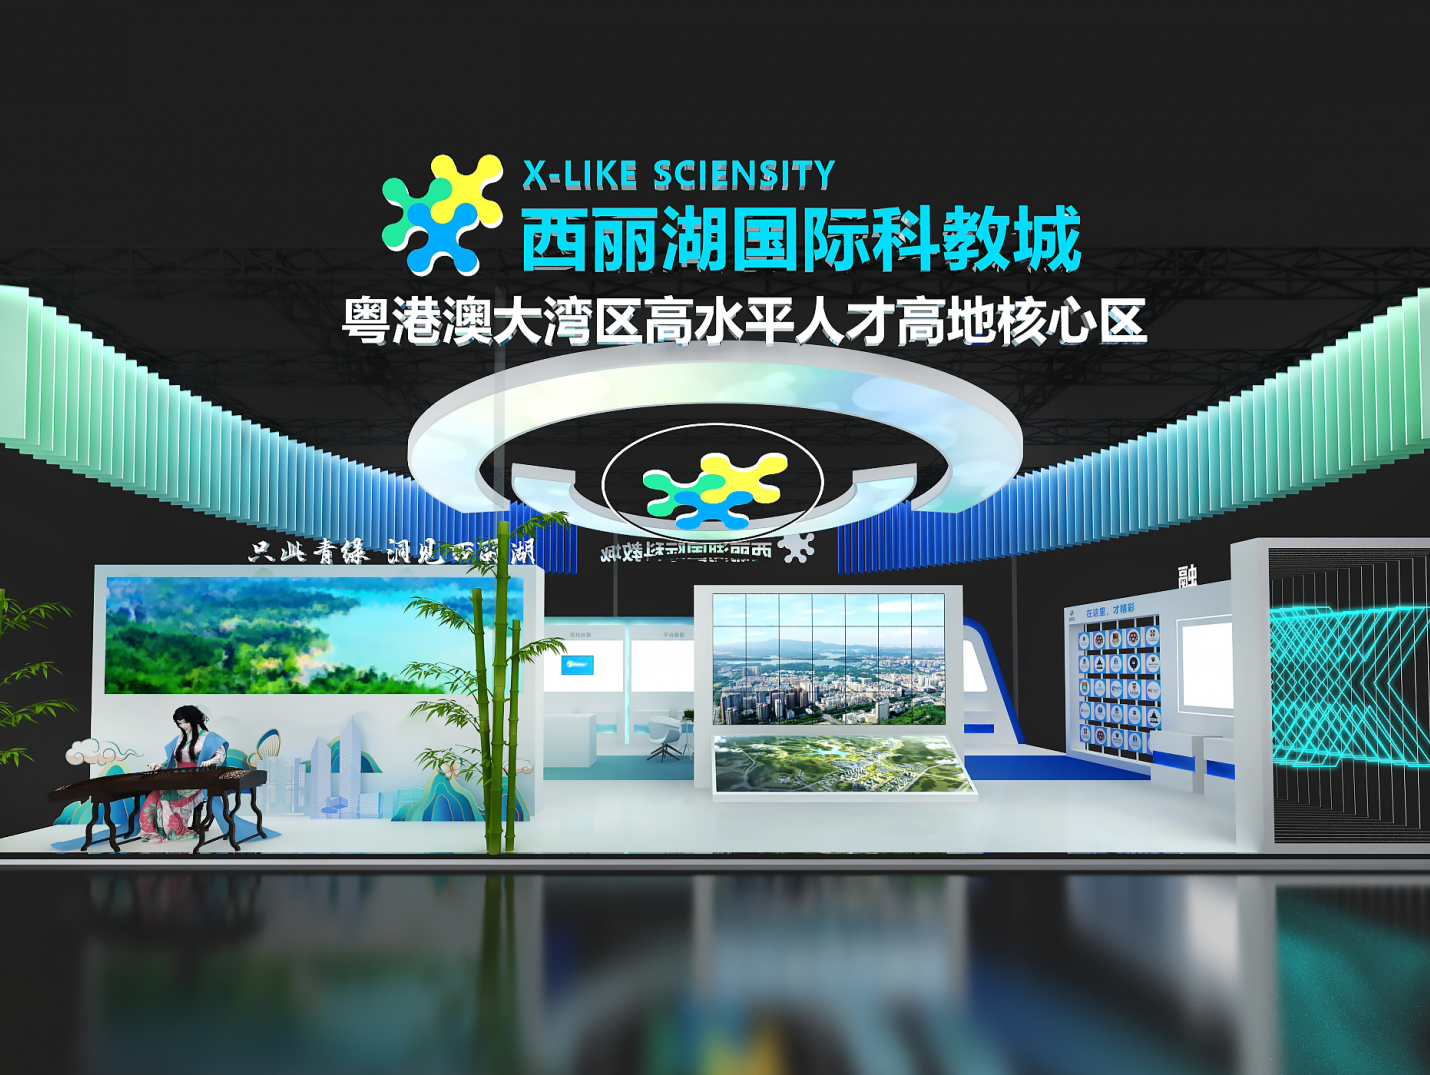 第二十一届中国国际人才交流大会明日在深圳开幕 南山全方位展示创新高地城区魅力